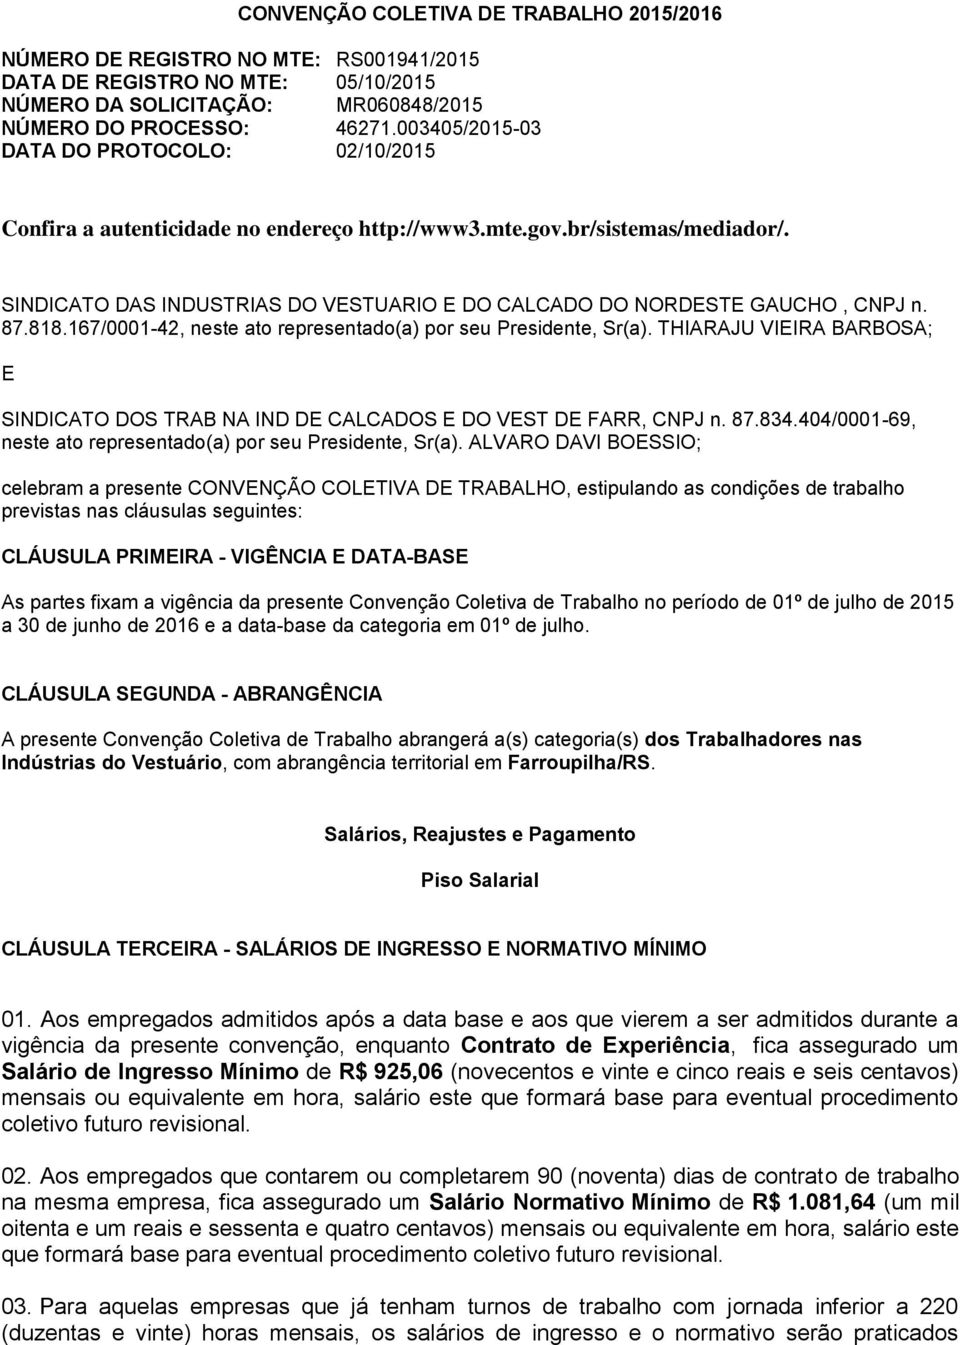 SINDICATO DAS INDUSTRIAS DO VESTUARIO E DO CALCADO DO NORDESTE GAUCHO, CNPJ n. 87.818.167/0001-42, neste ato representado(a) por seu Presidente, Sr(a).